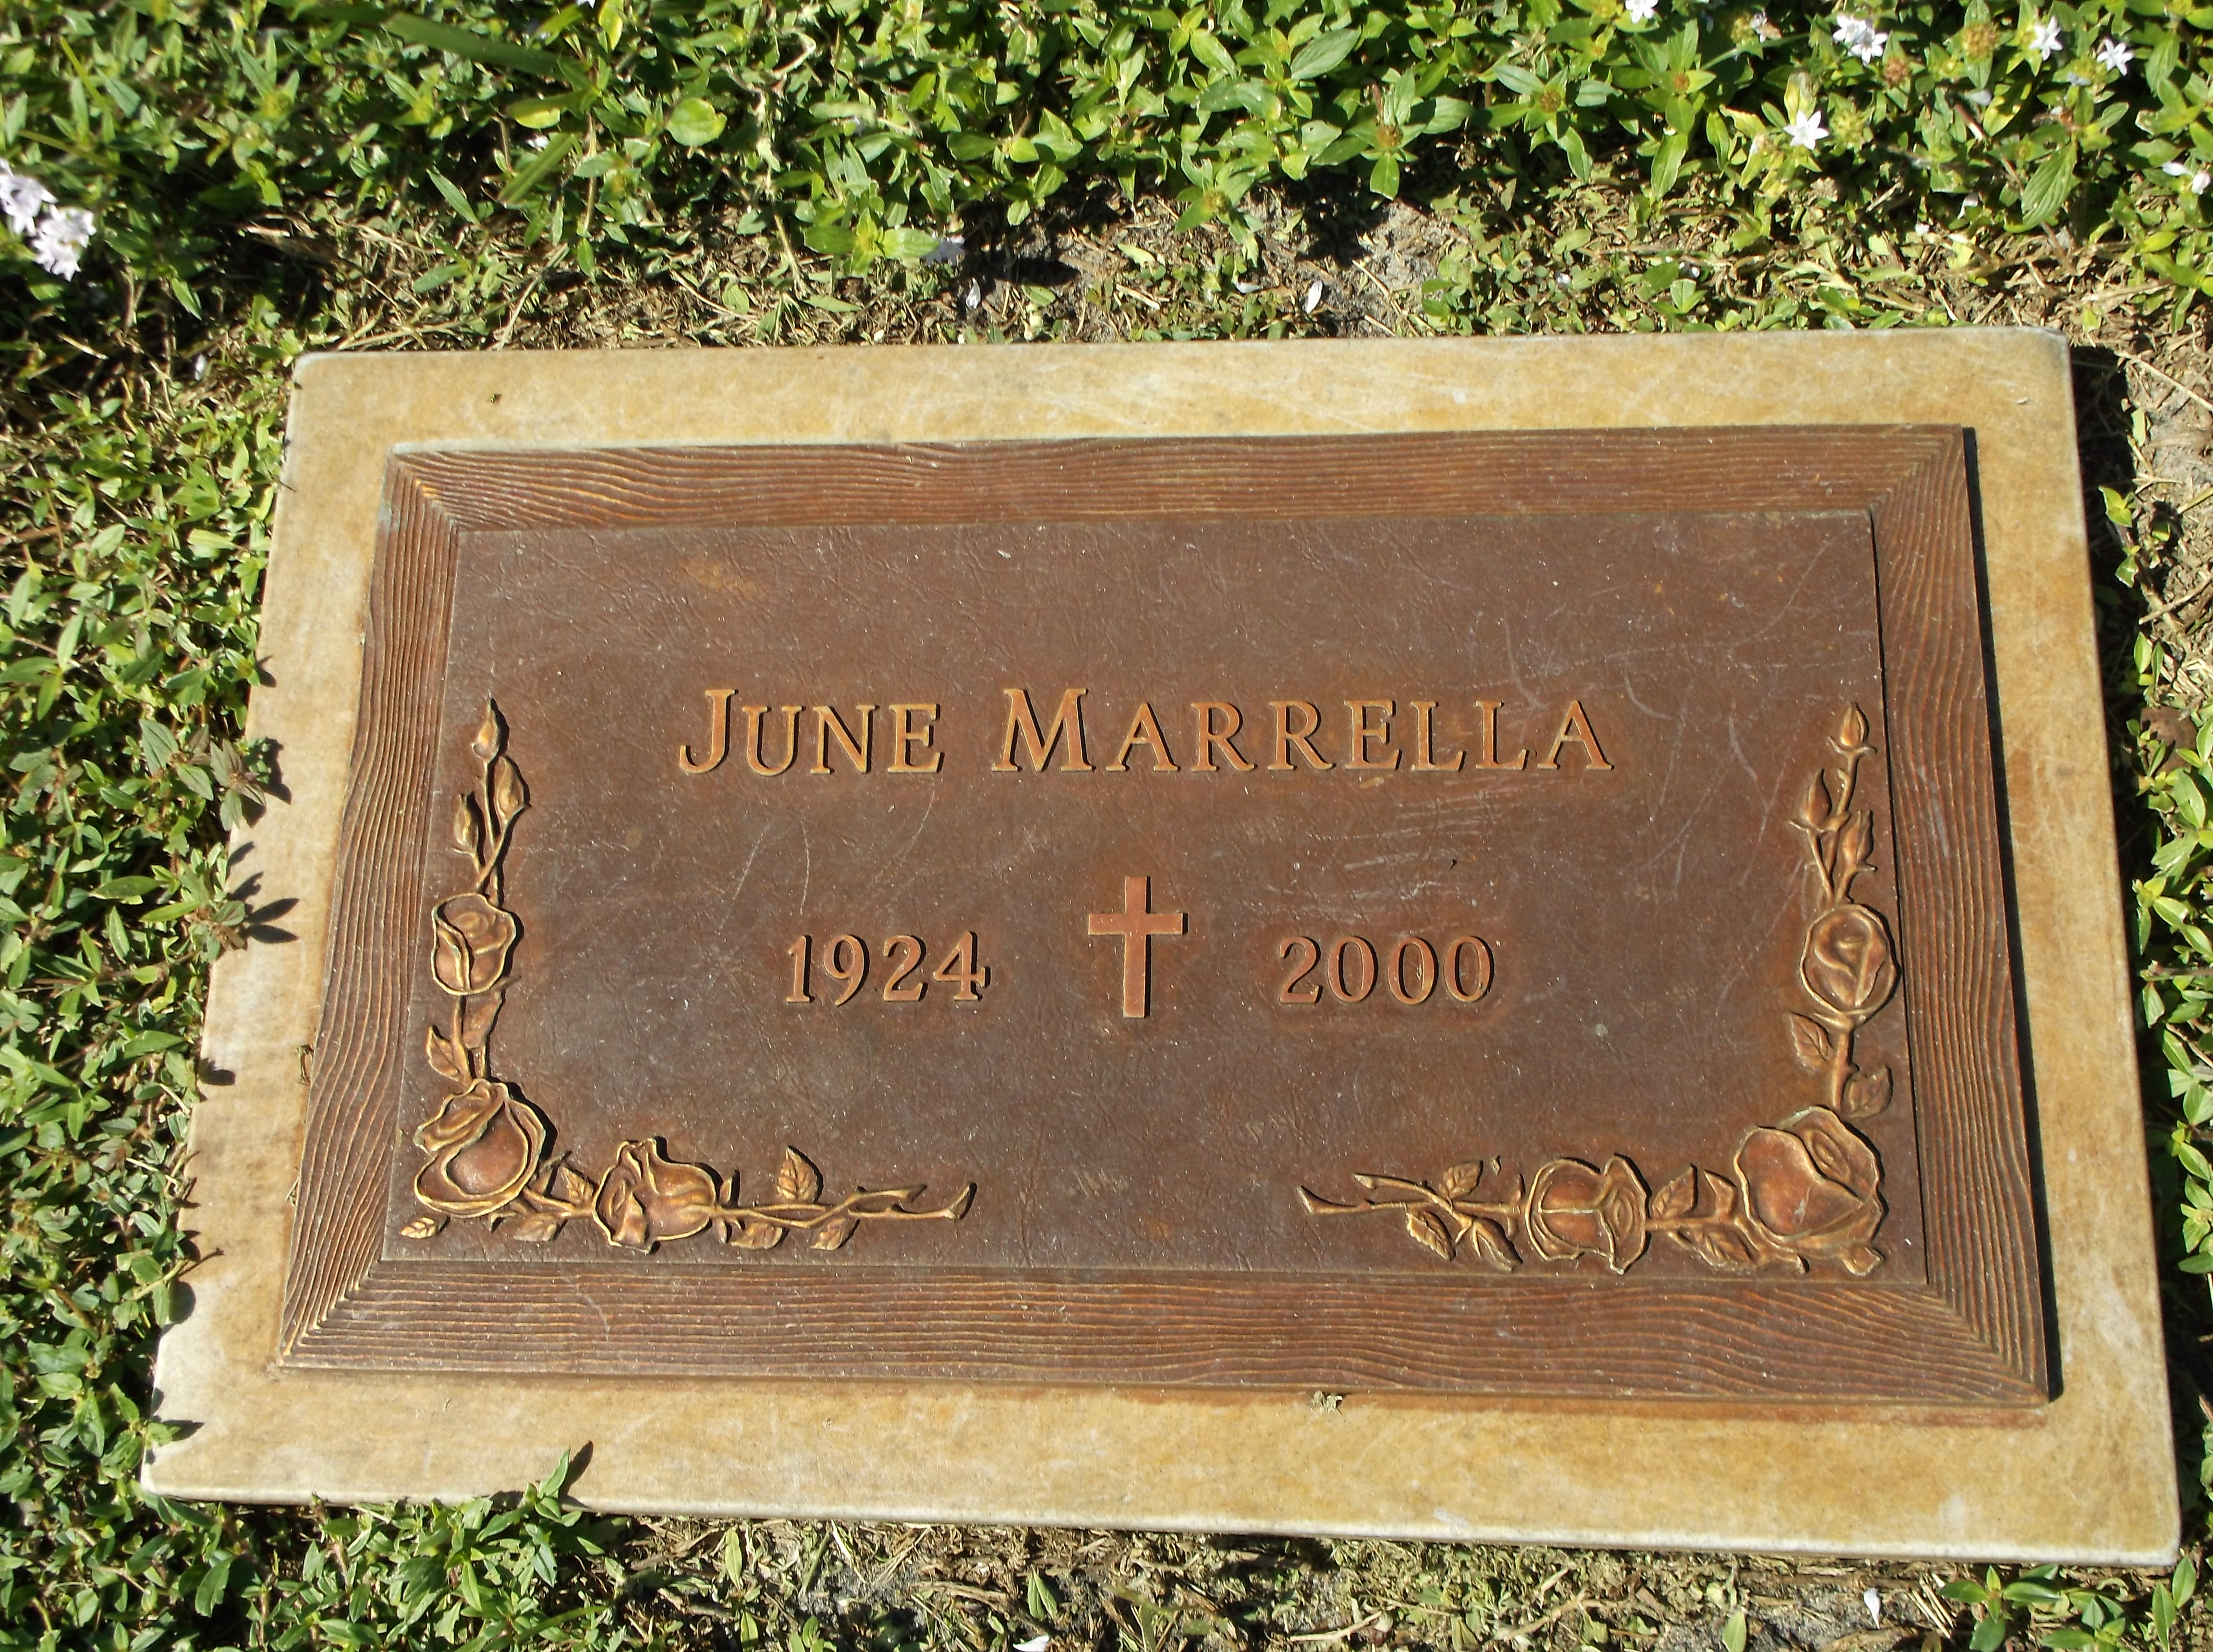 June Marrella